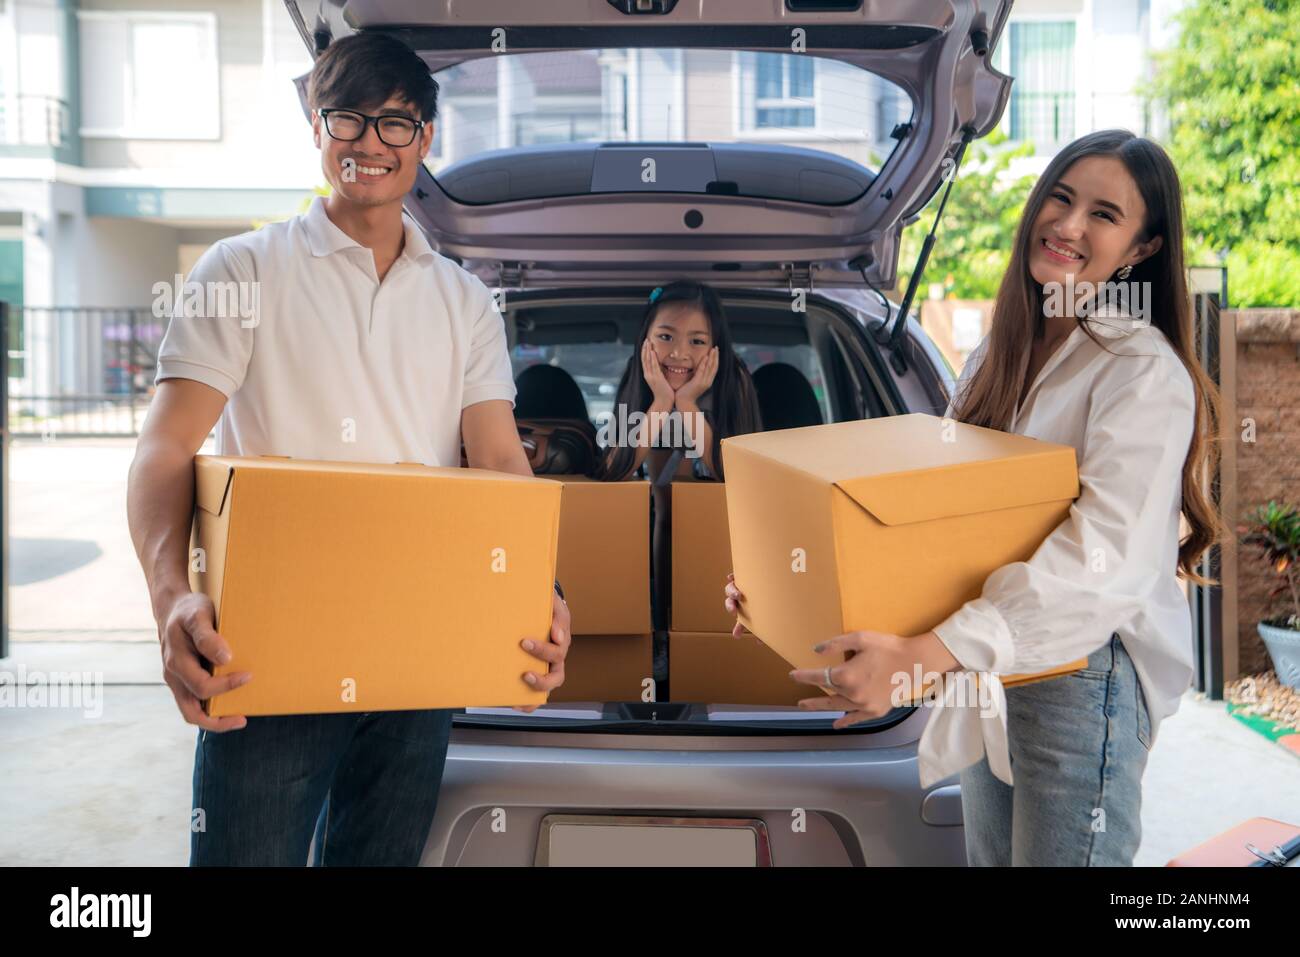 Gerne asiatische Familie mit Vater und Mutter steht in der Nähe von Auto mit Kartons und ihre Tochter lächelnd im Auto am Haus Garage. Beweglicher Tag. Stockfoto